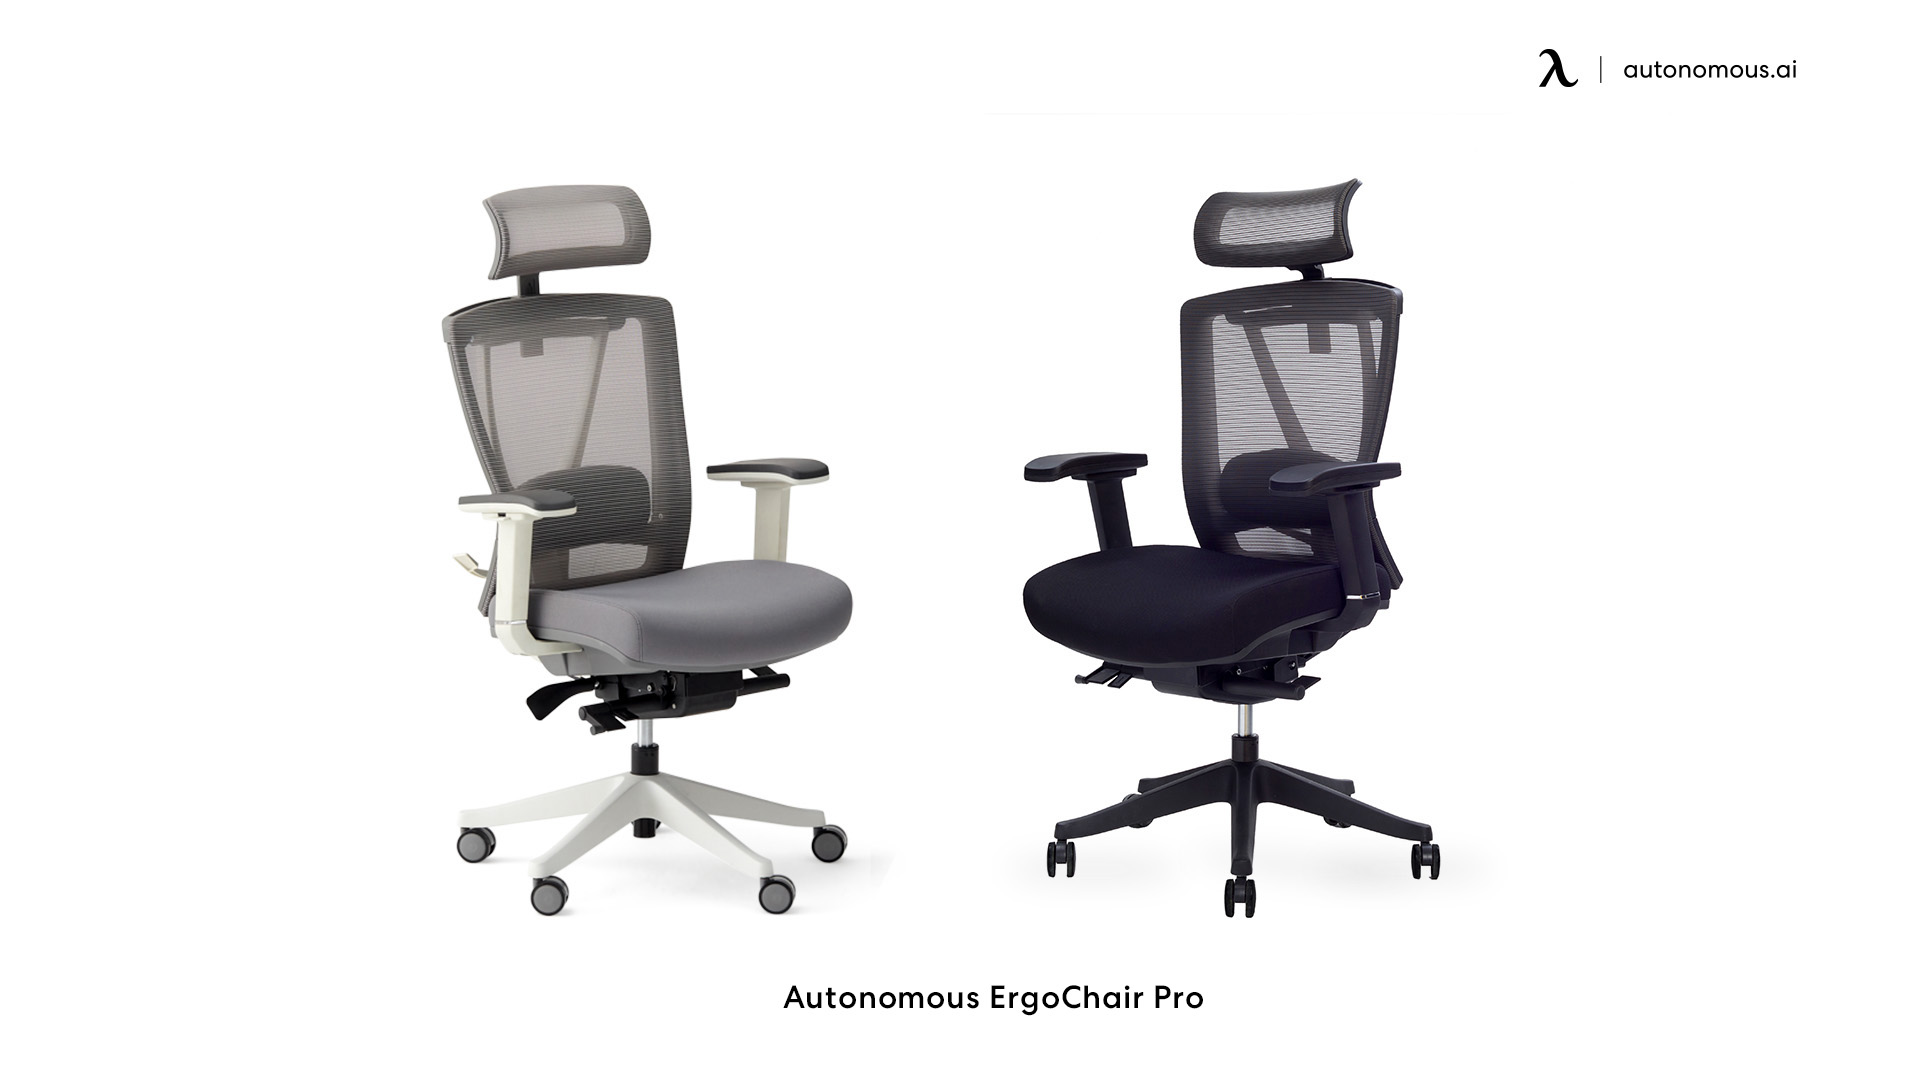 Autonomous ErgoChair Pro affordable mesh chair